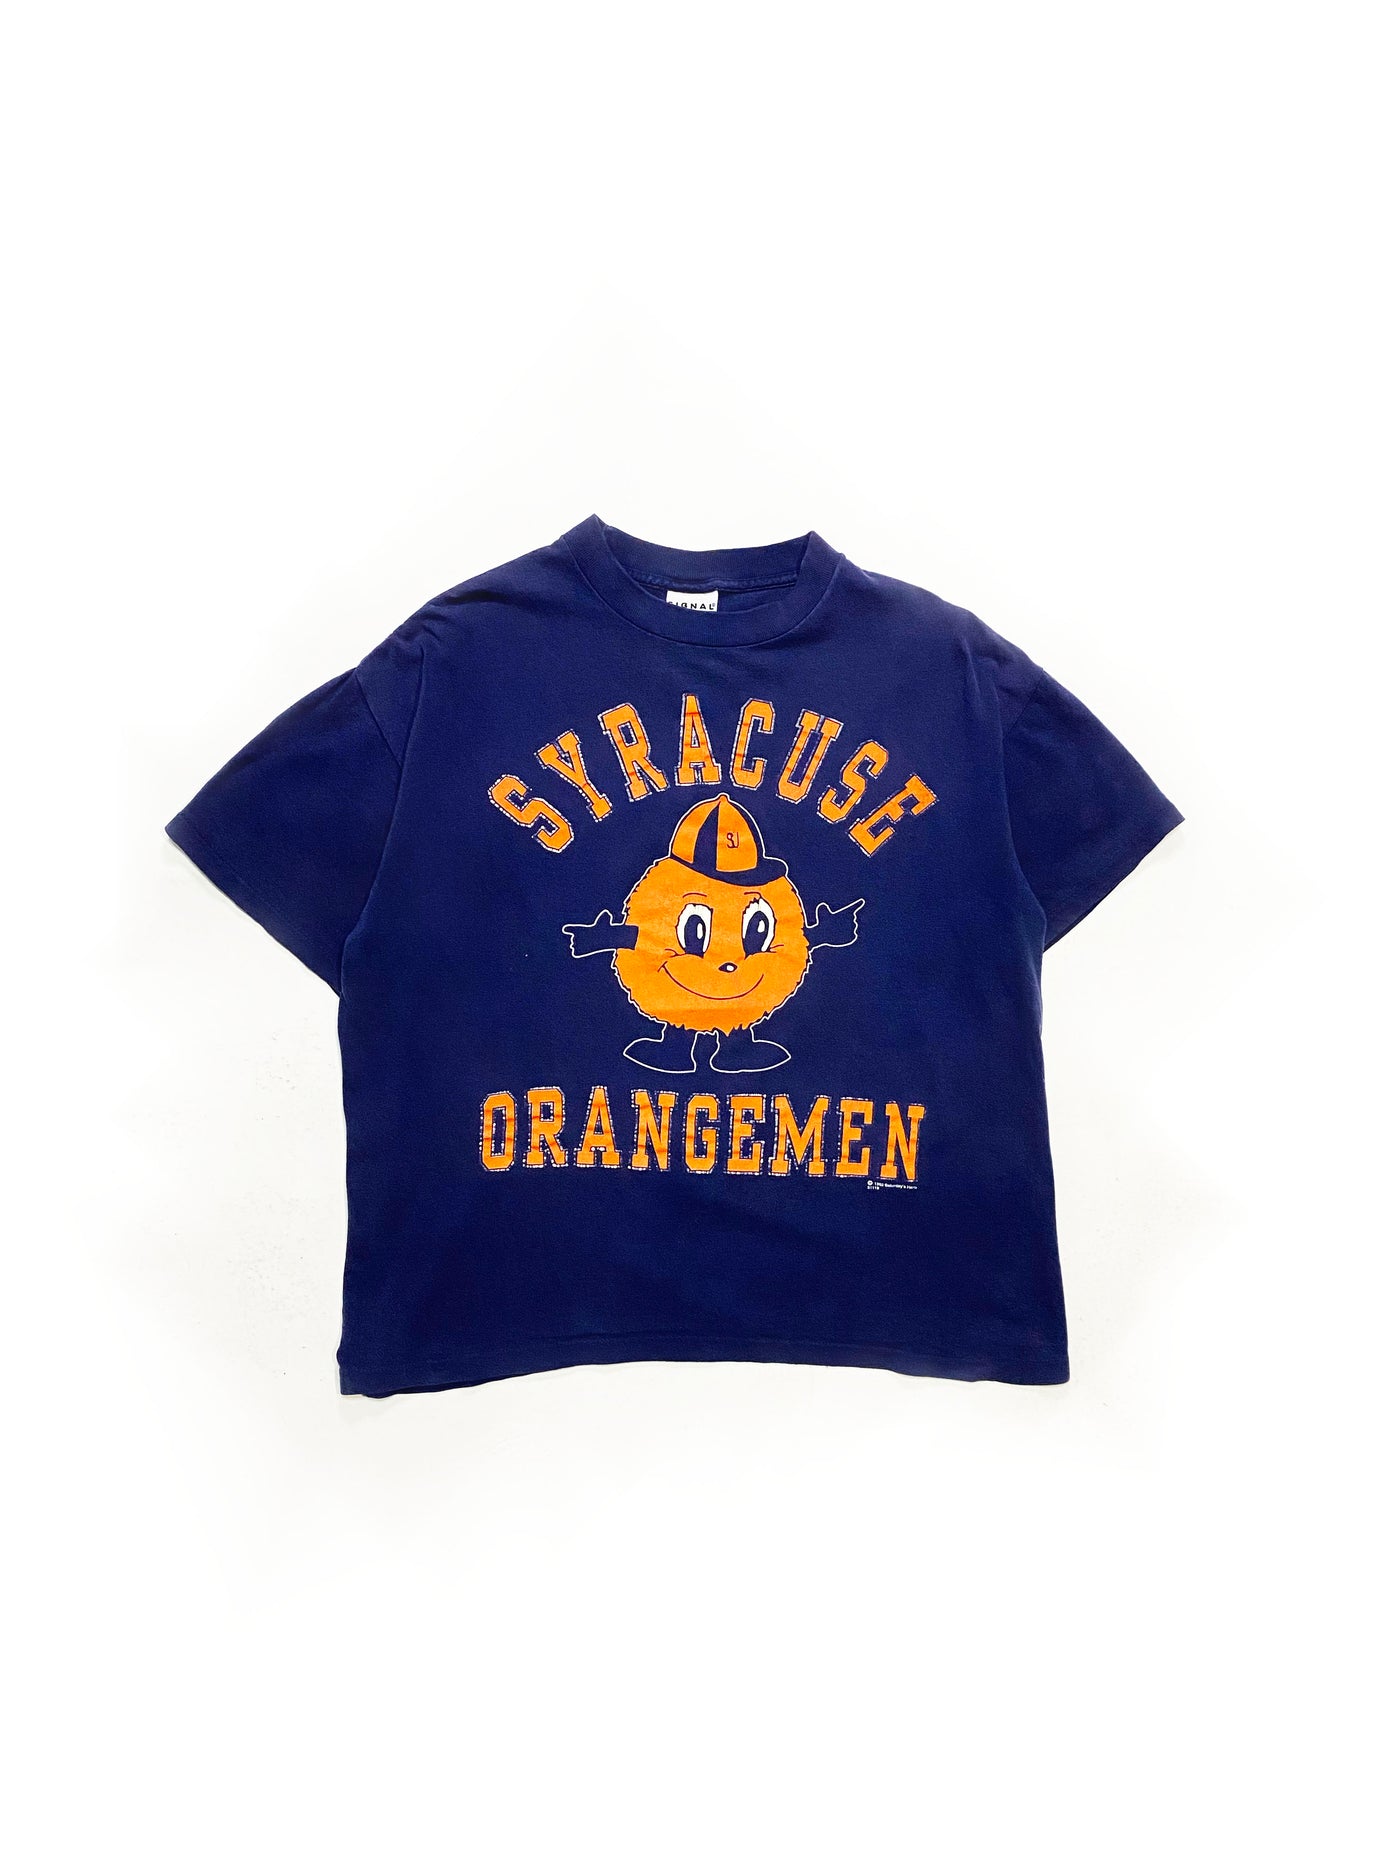 Vintage 1992 Syracuse T-Shirt